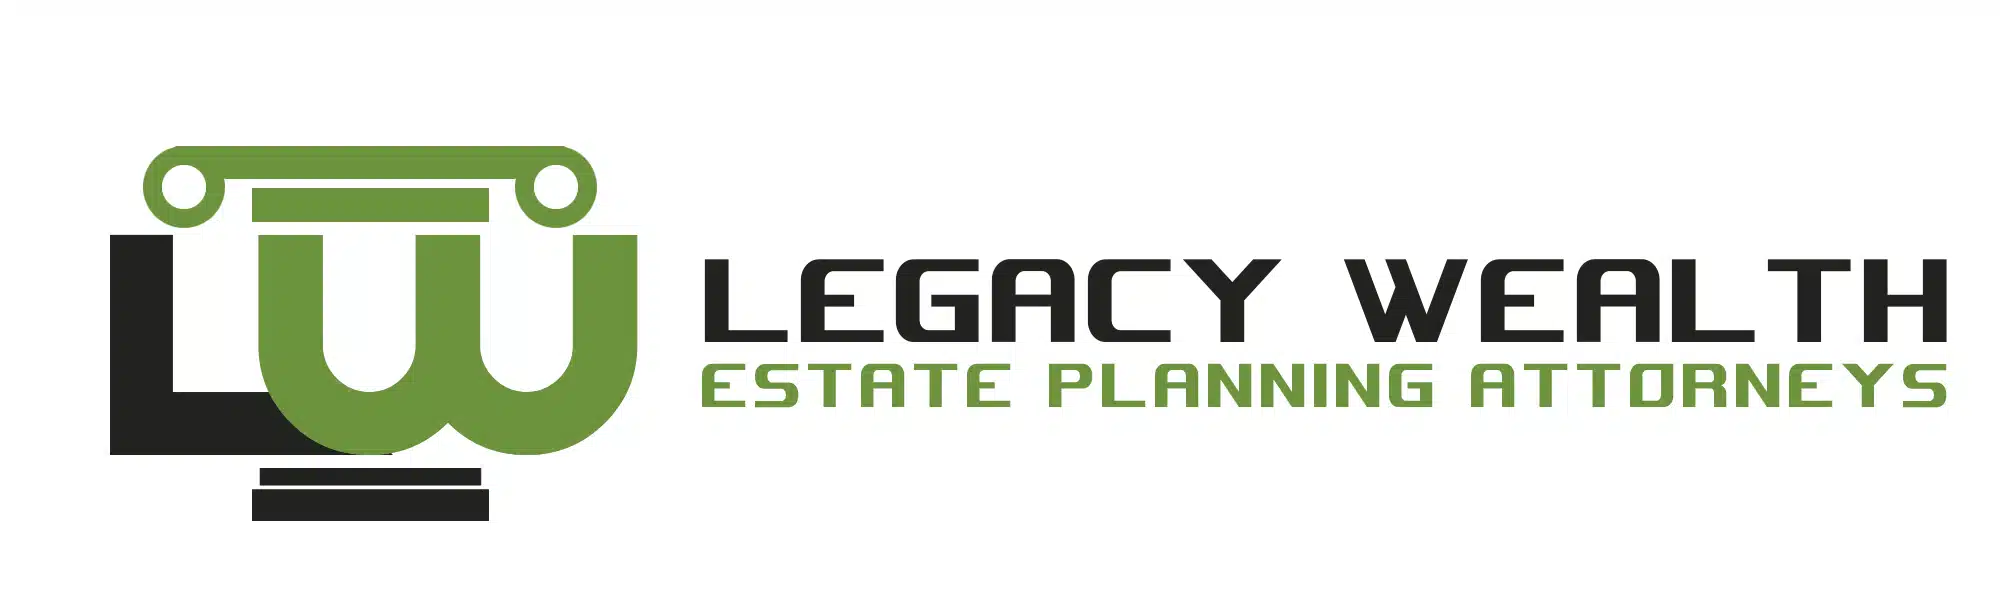 Legacy-Wealth-6.webp